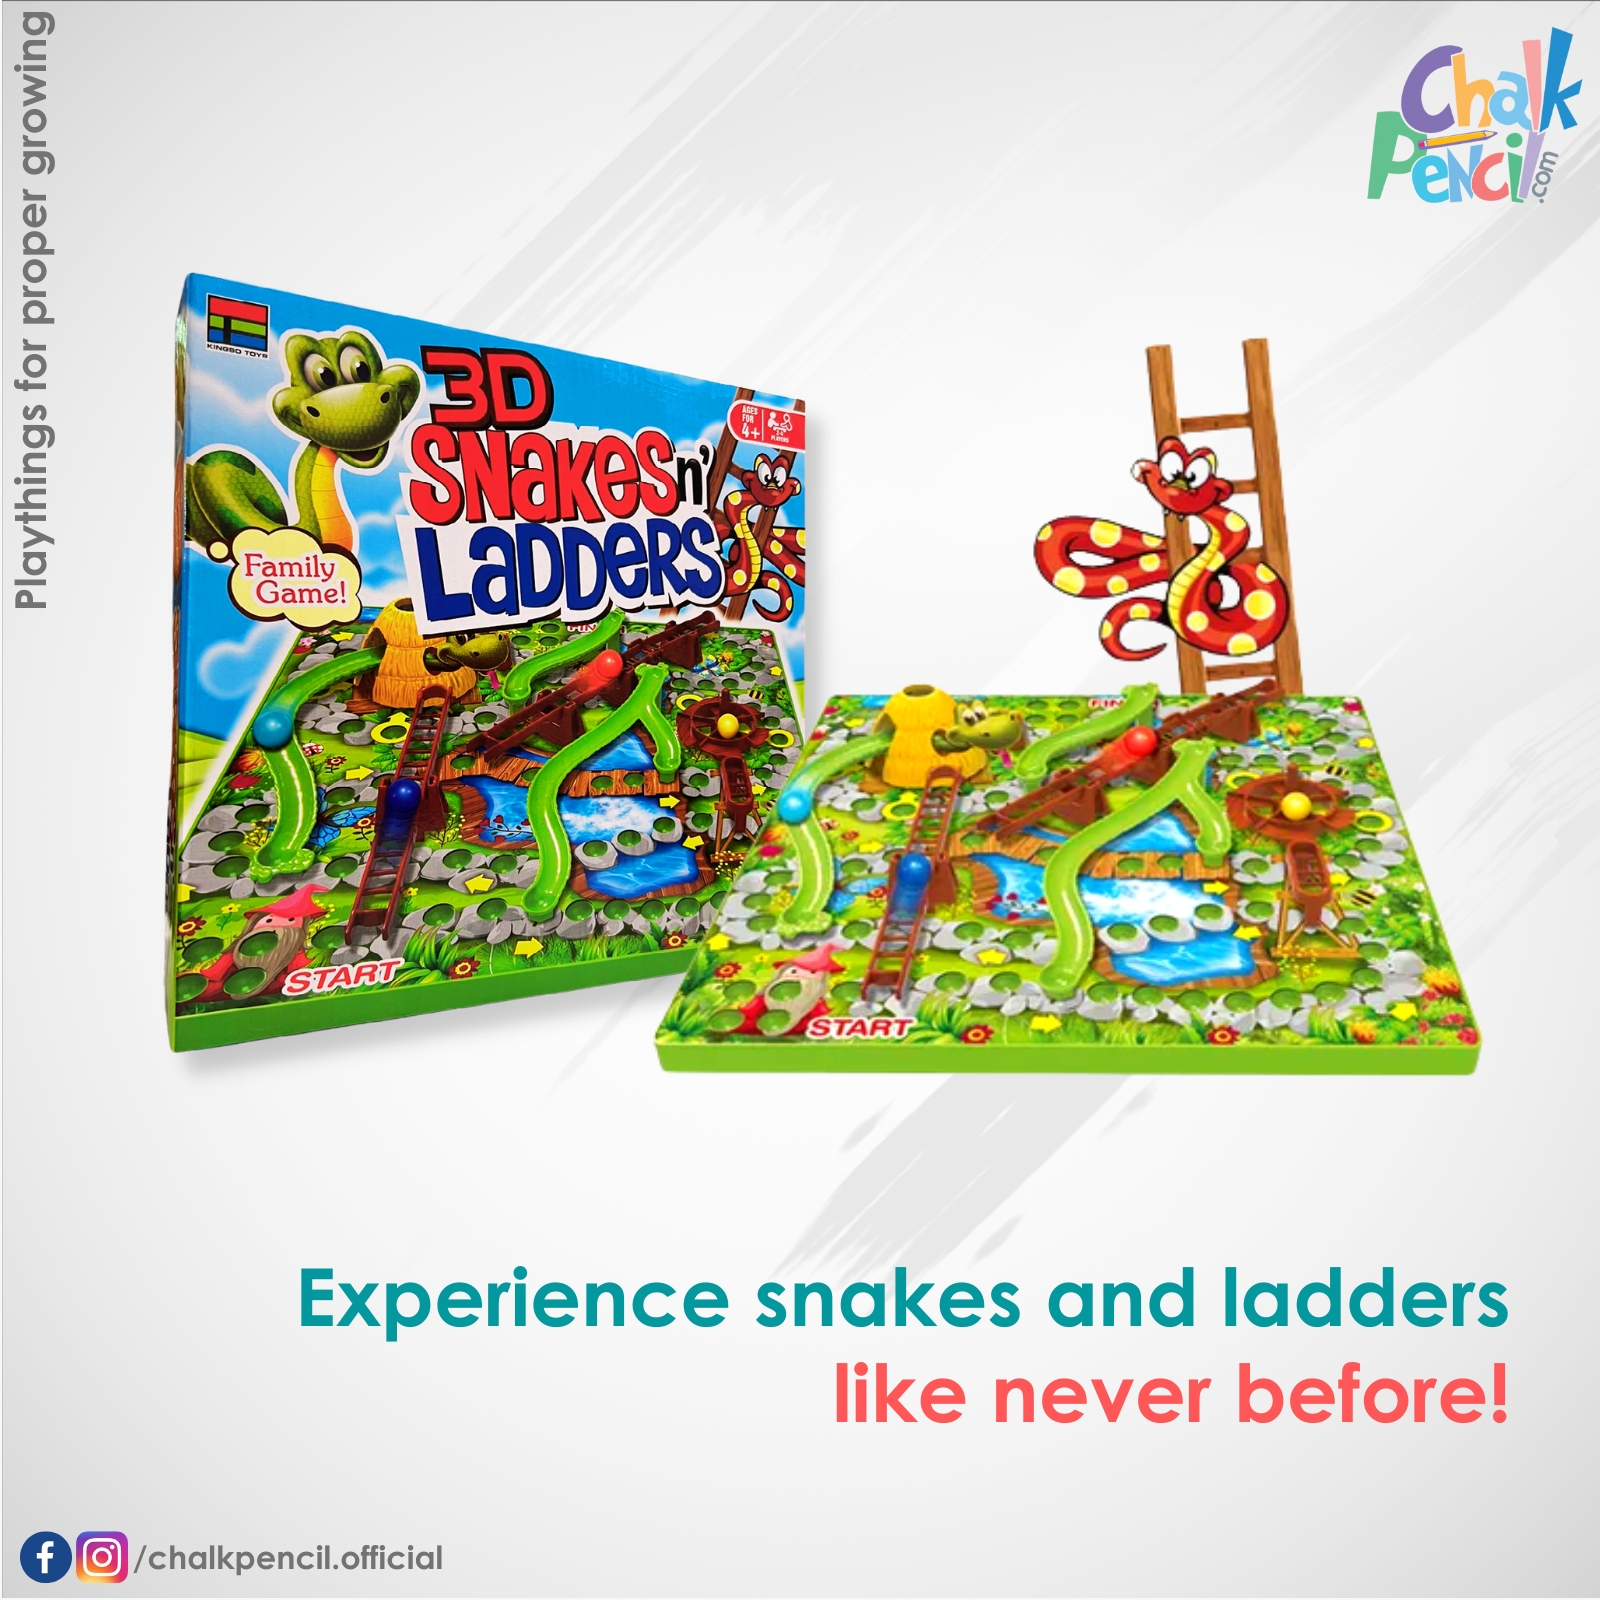 3D Snakes n' Ladders